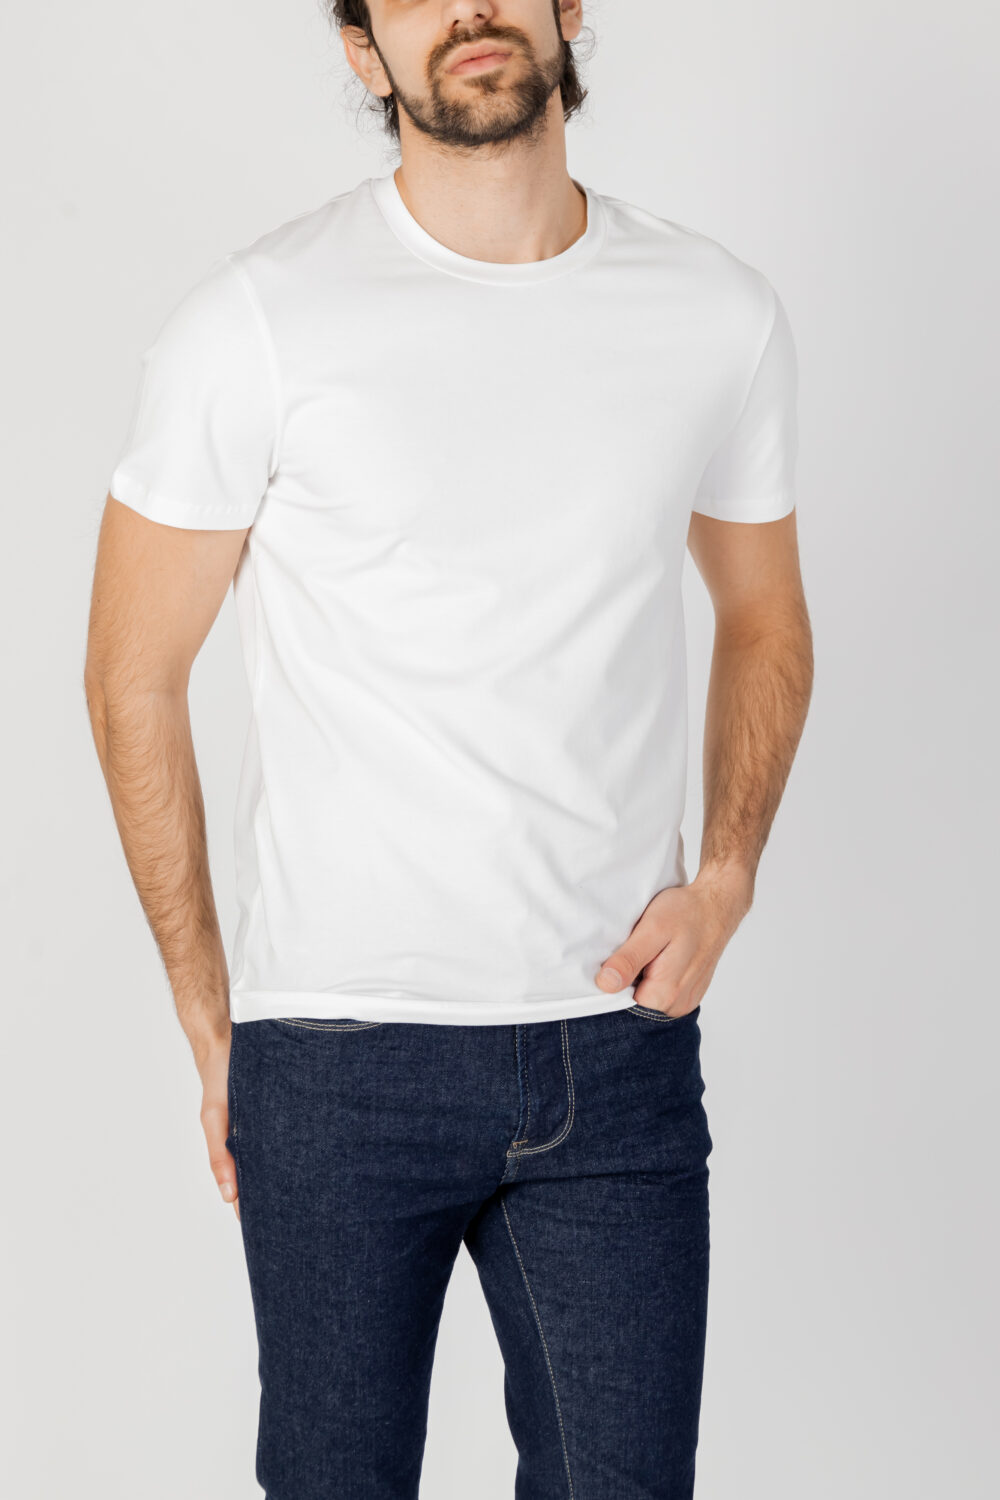 T-shirt PEUTEREY SORBUS N 01 Bianco - Foto 1